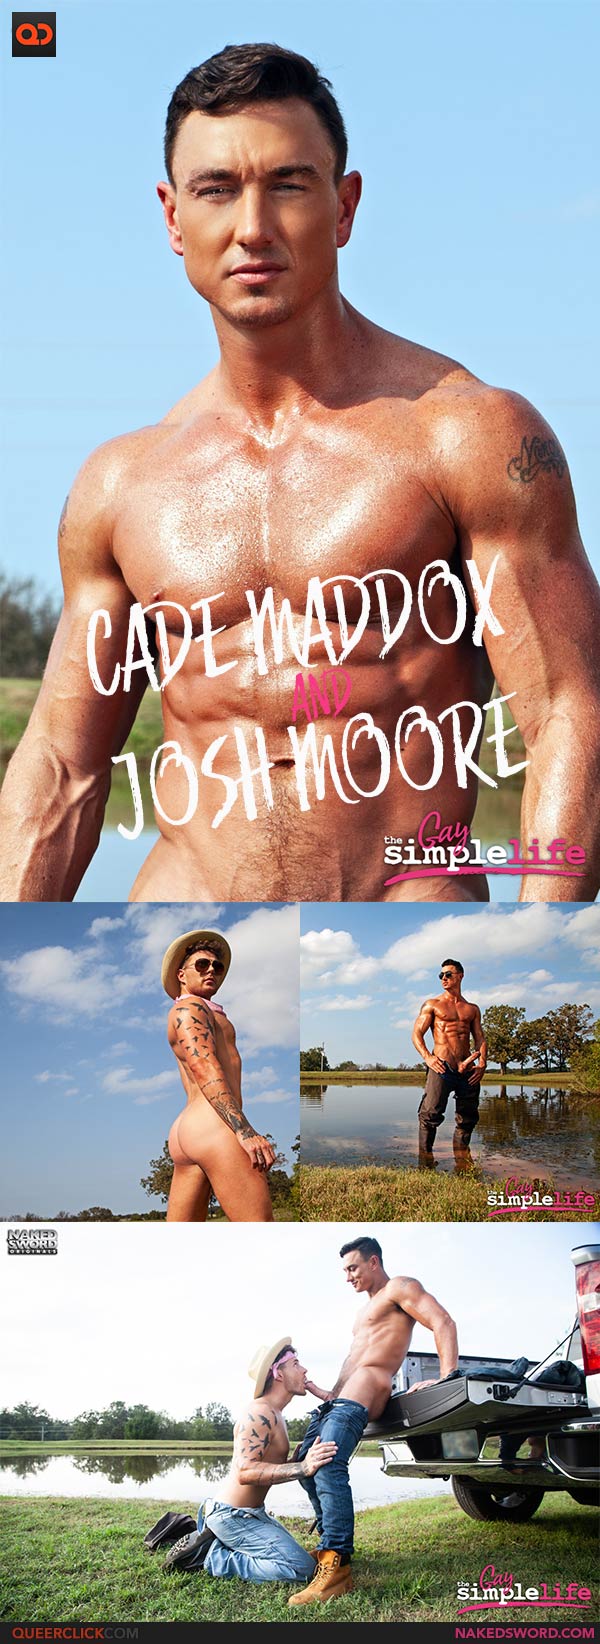 NakedSword: Josh Moore and Cade Maddox